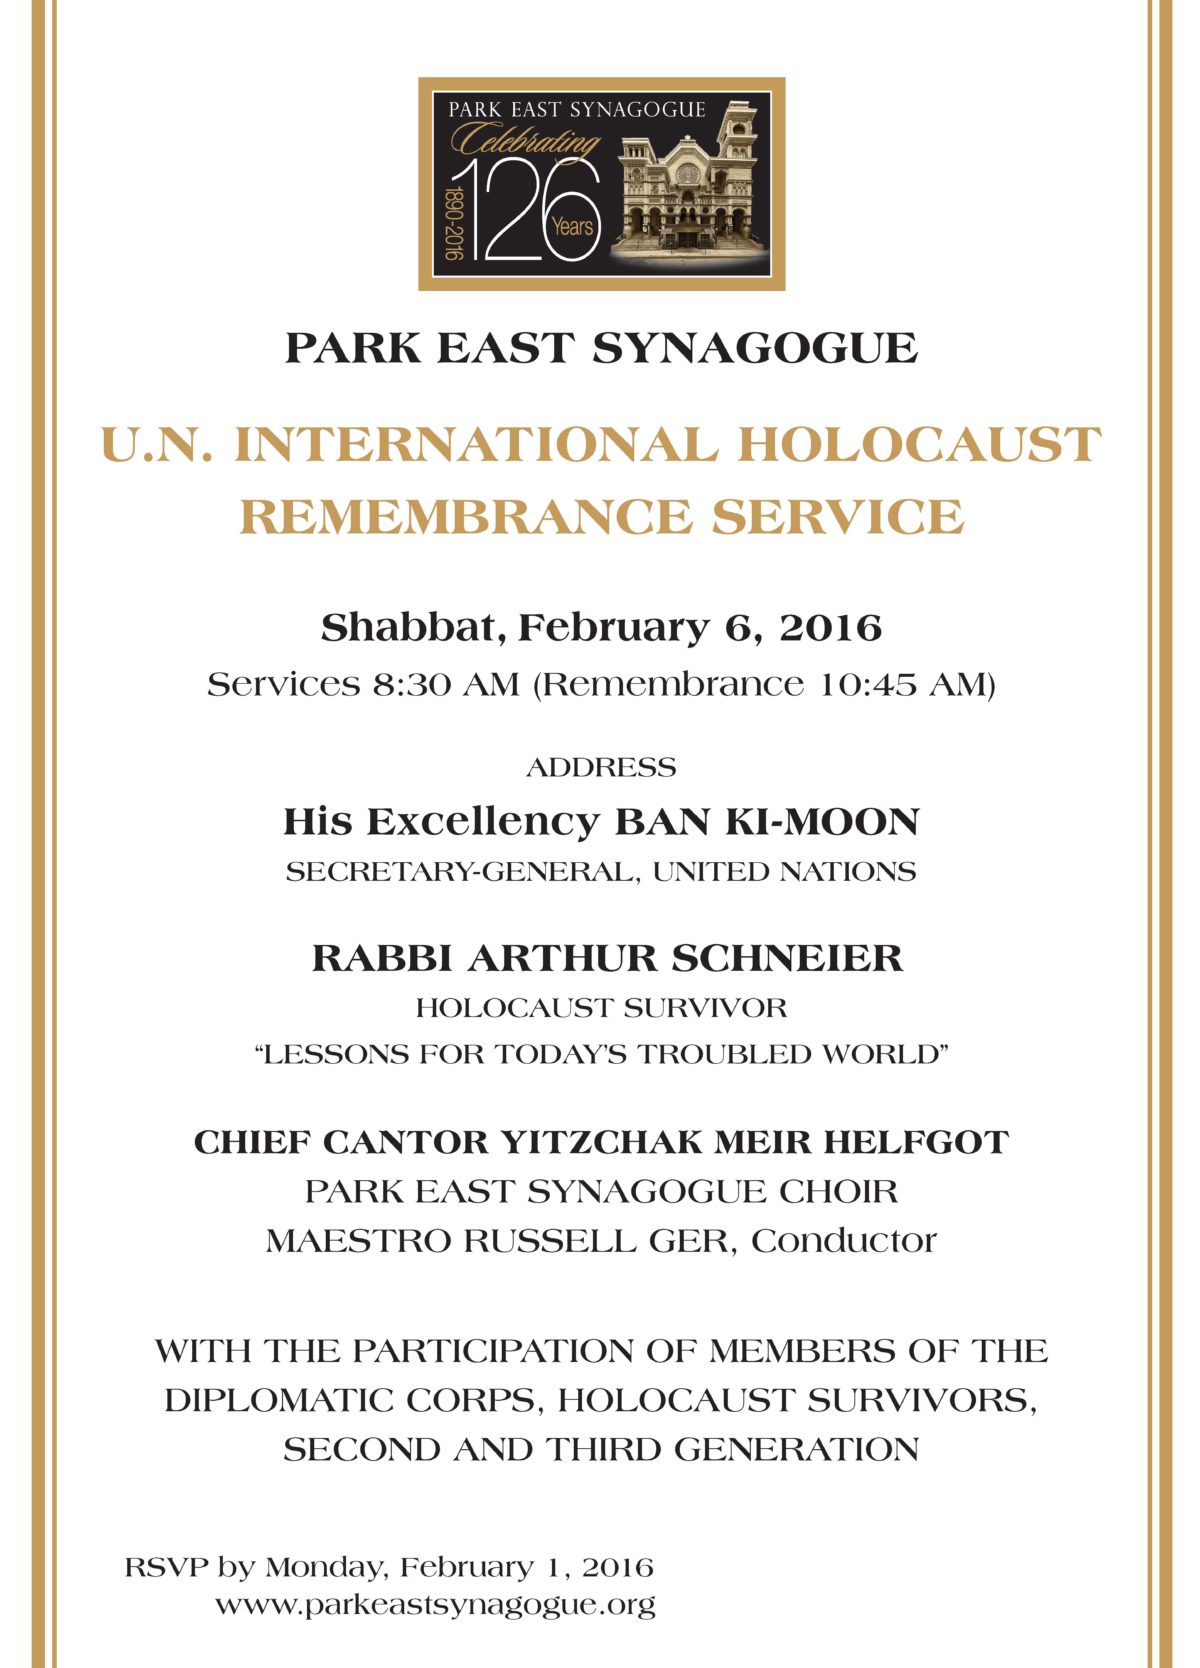 UN Holocaust Commemoration